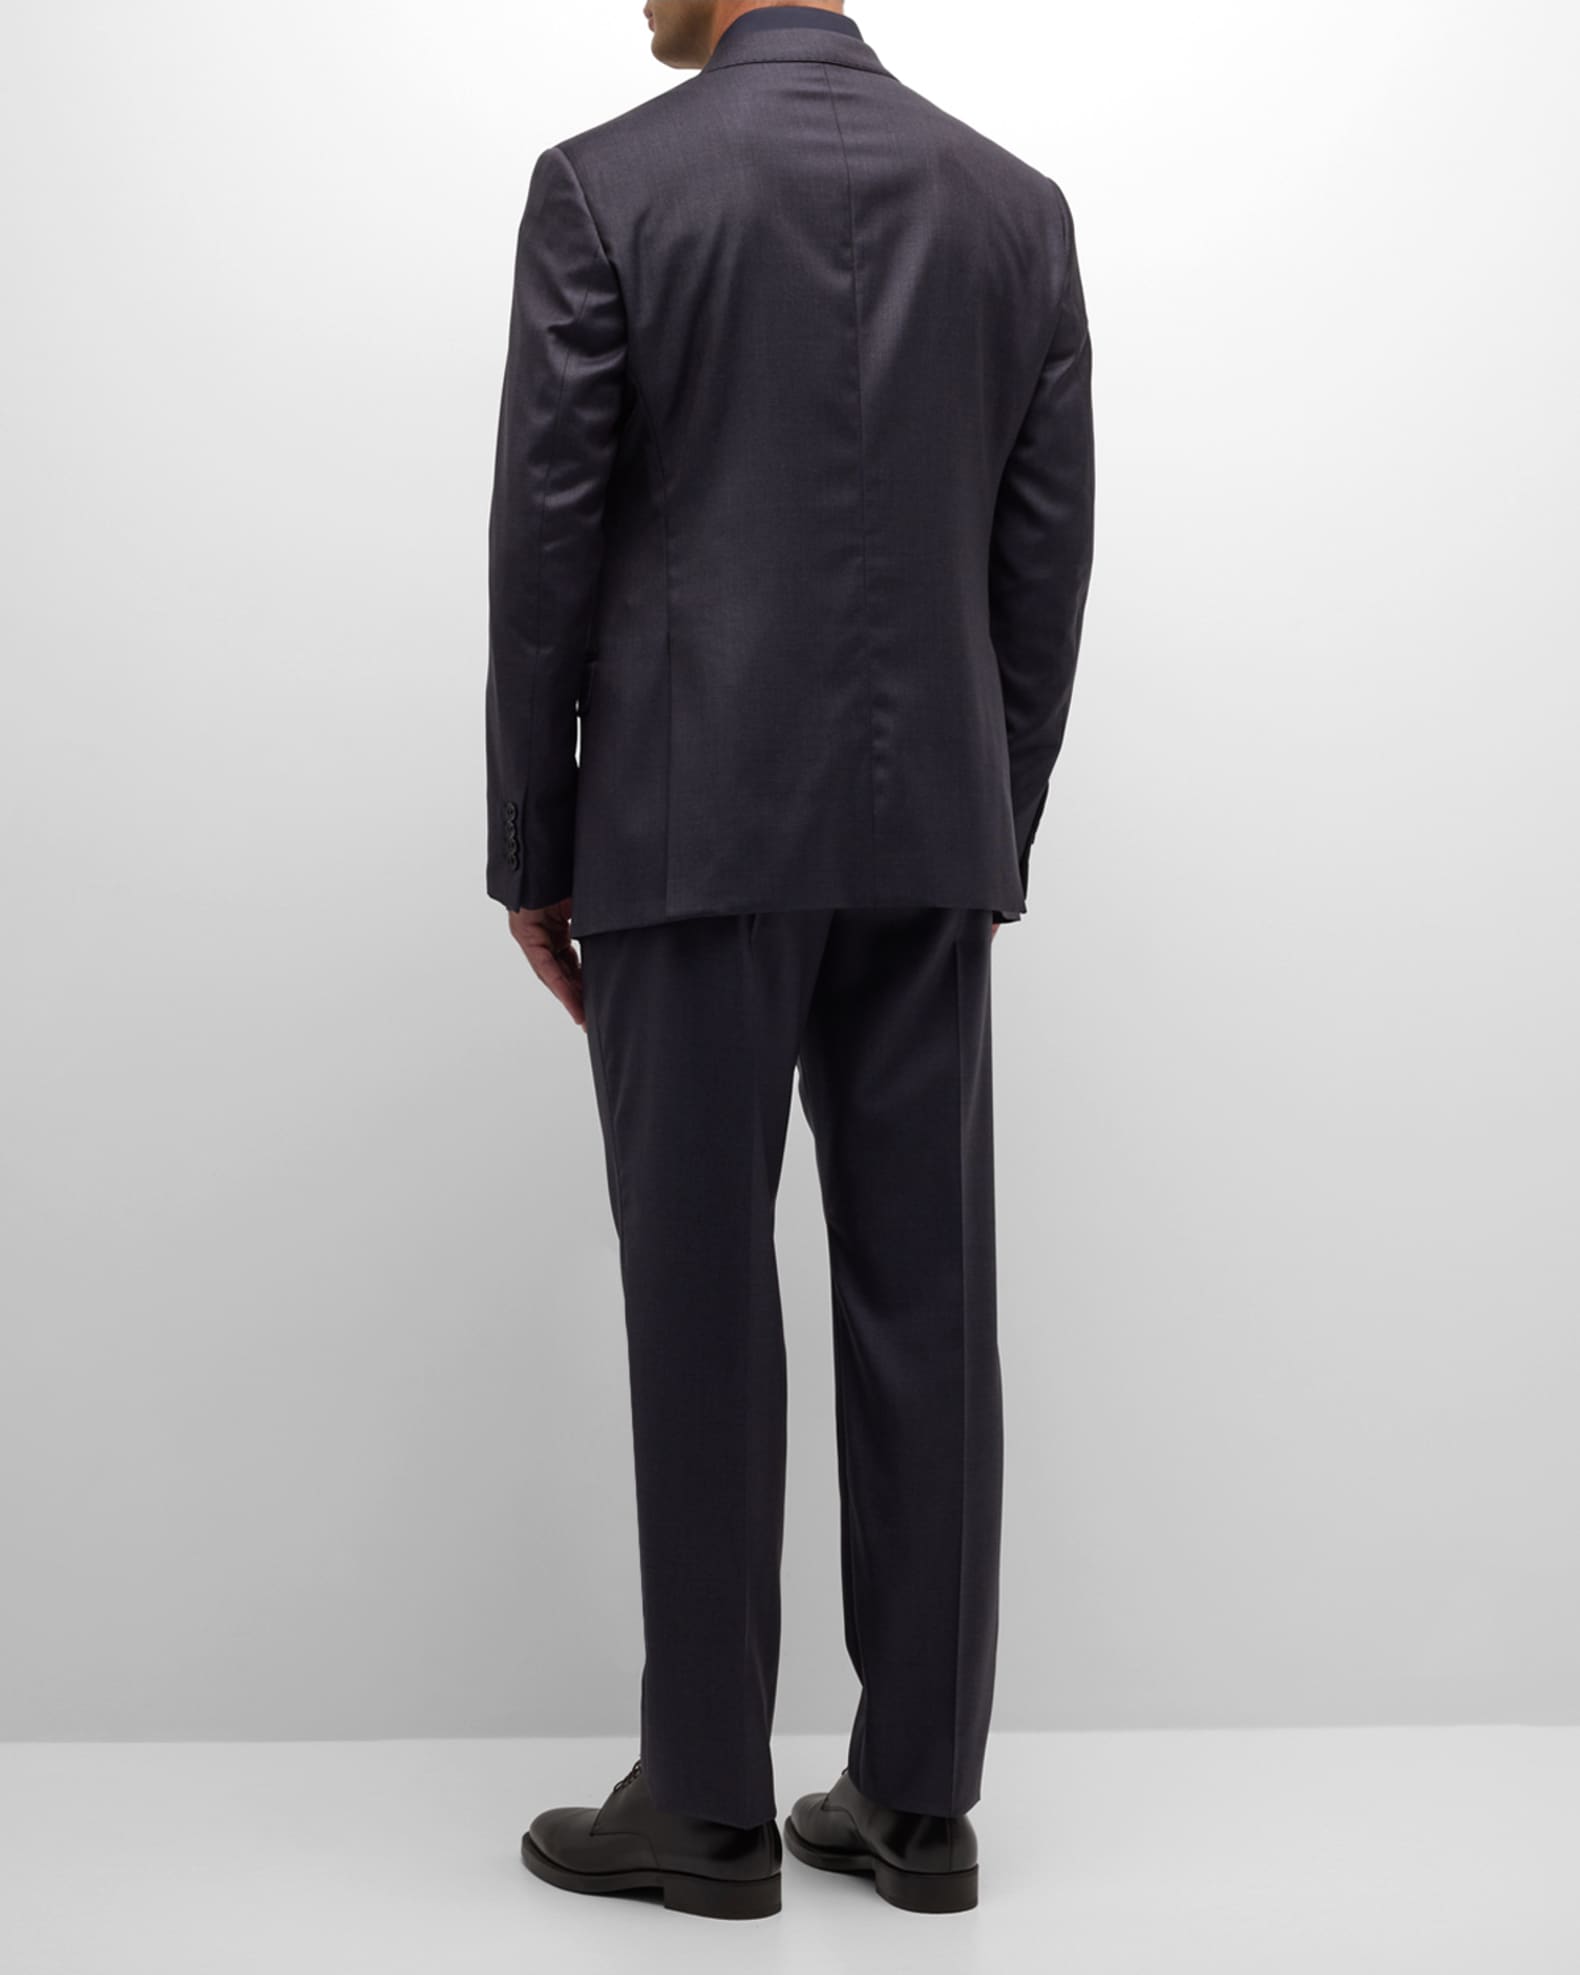 Emporio Armani Men's Tonal Micro Deco Suit | Neiman Marcus